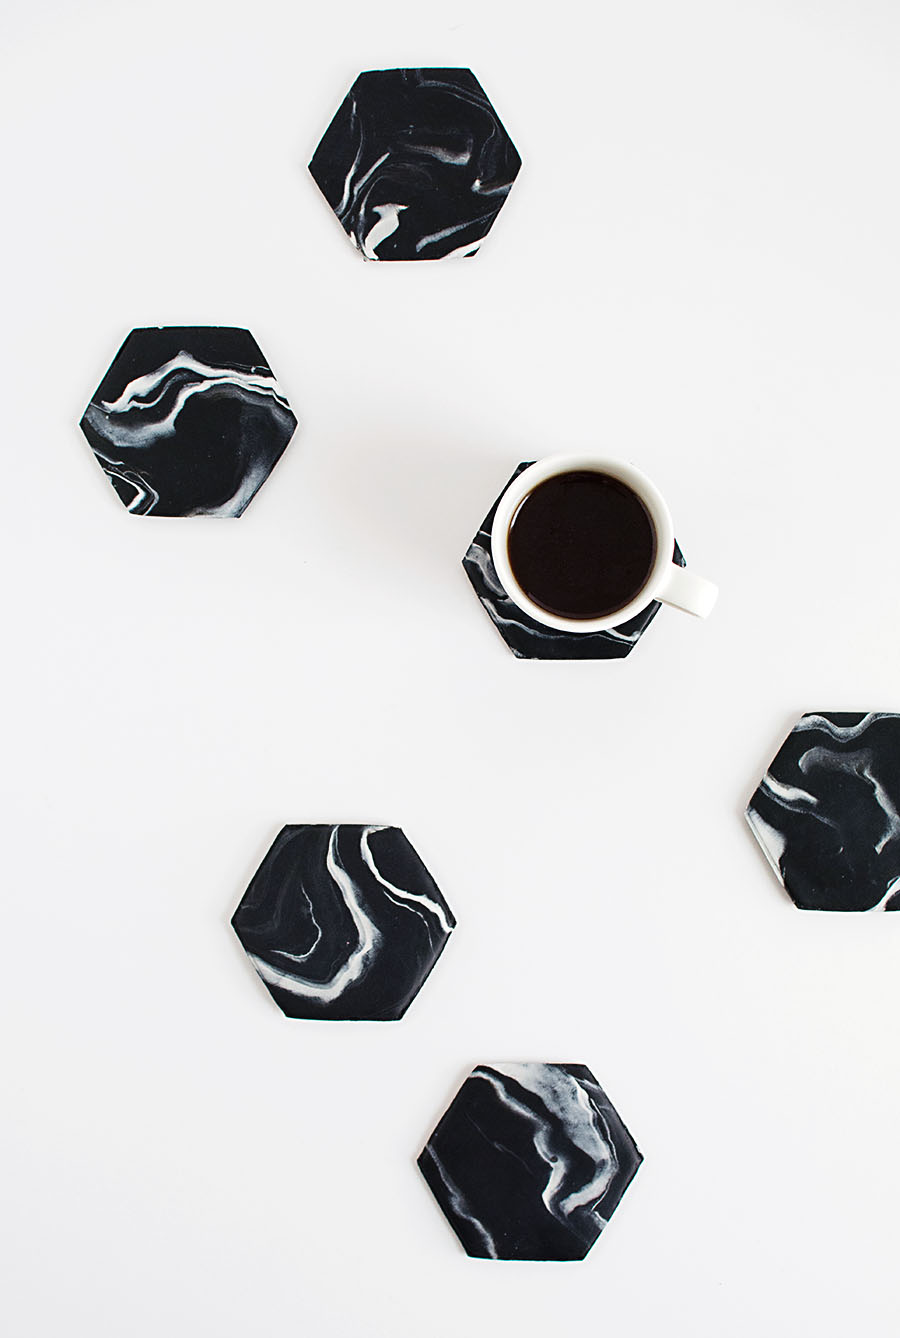 Black Marble Hexagon Coasters DIY